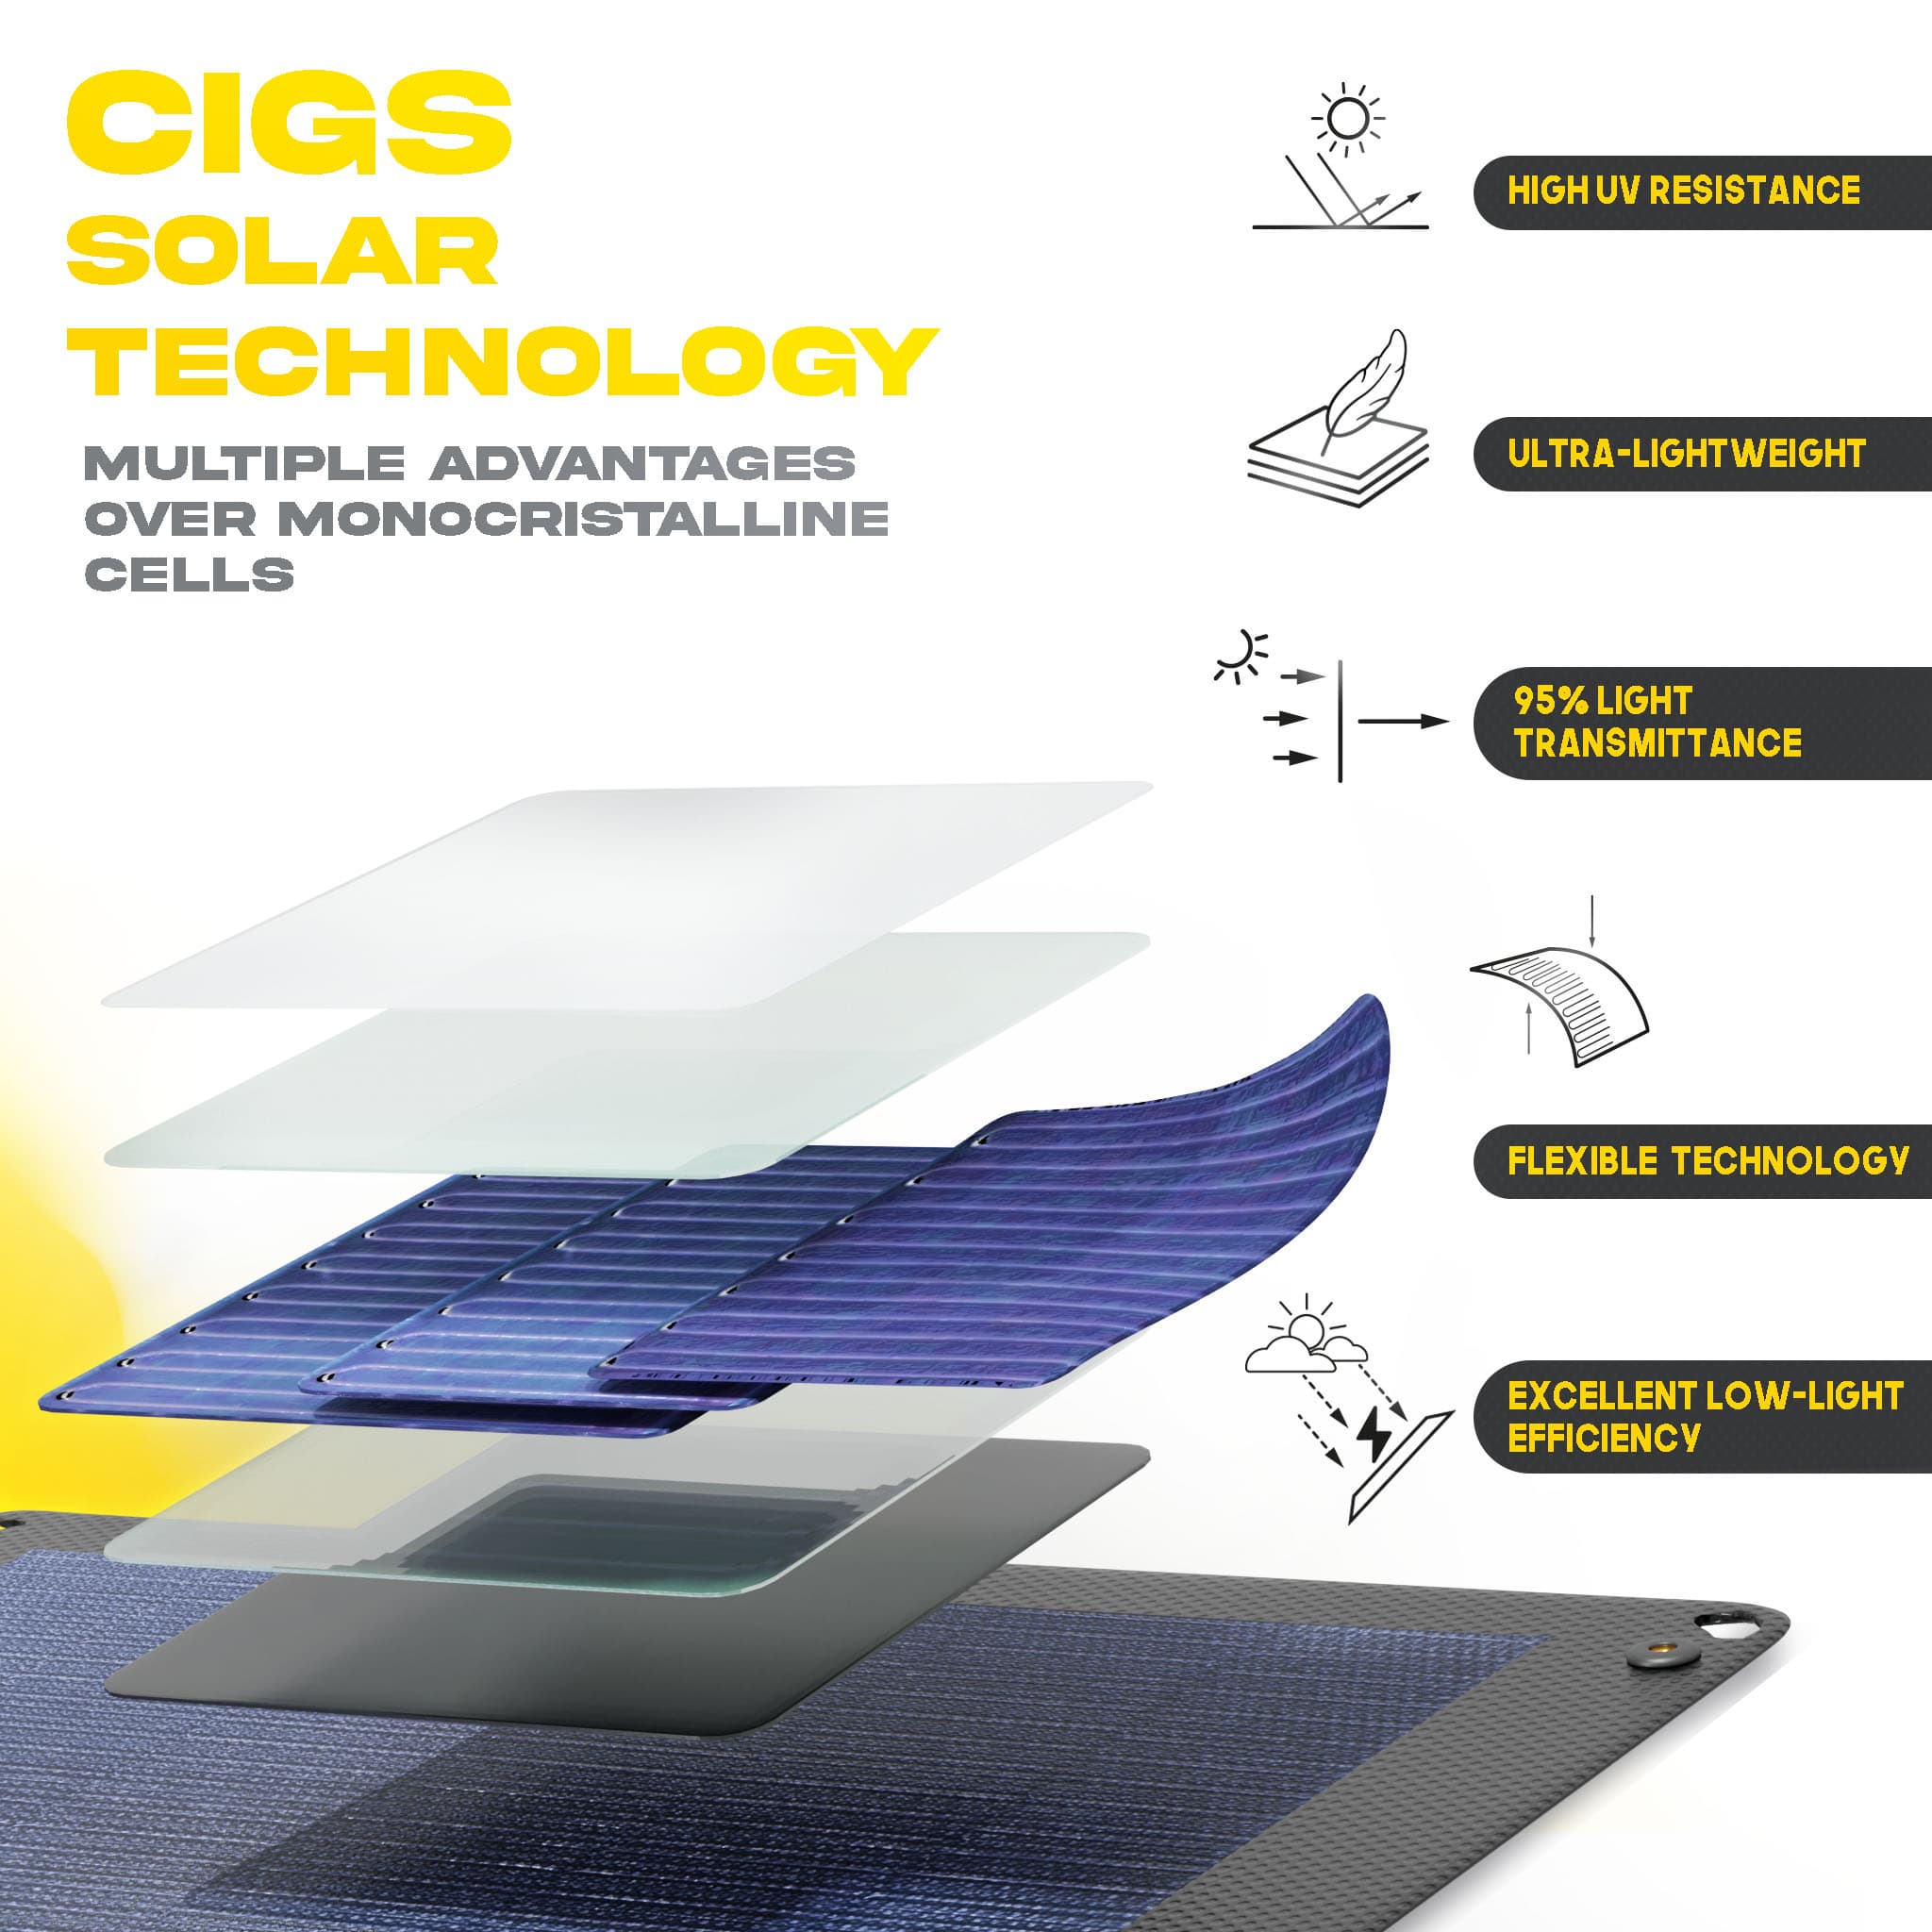 Erläuterung zur cigs-Solartechnik 